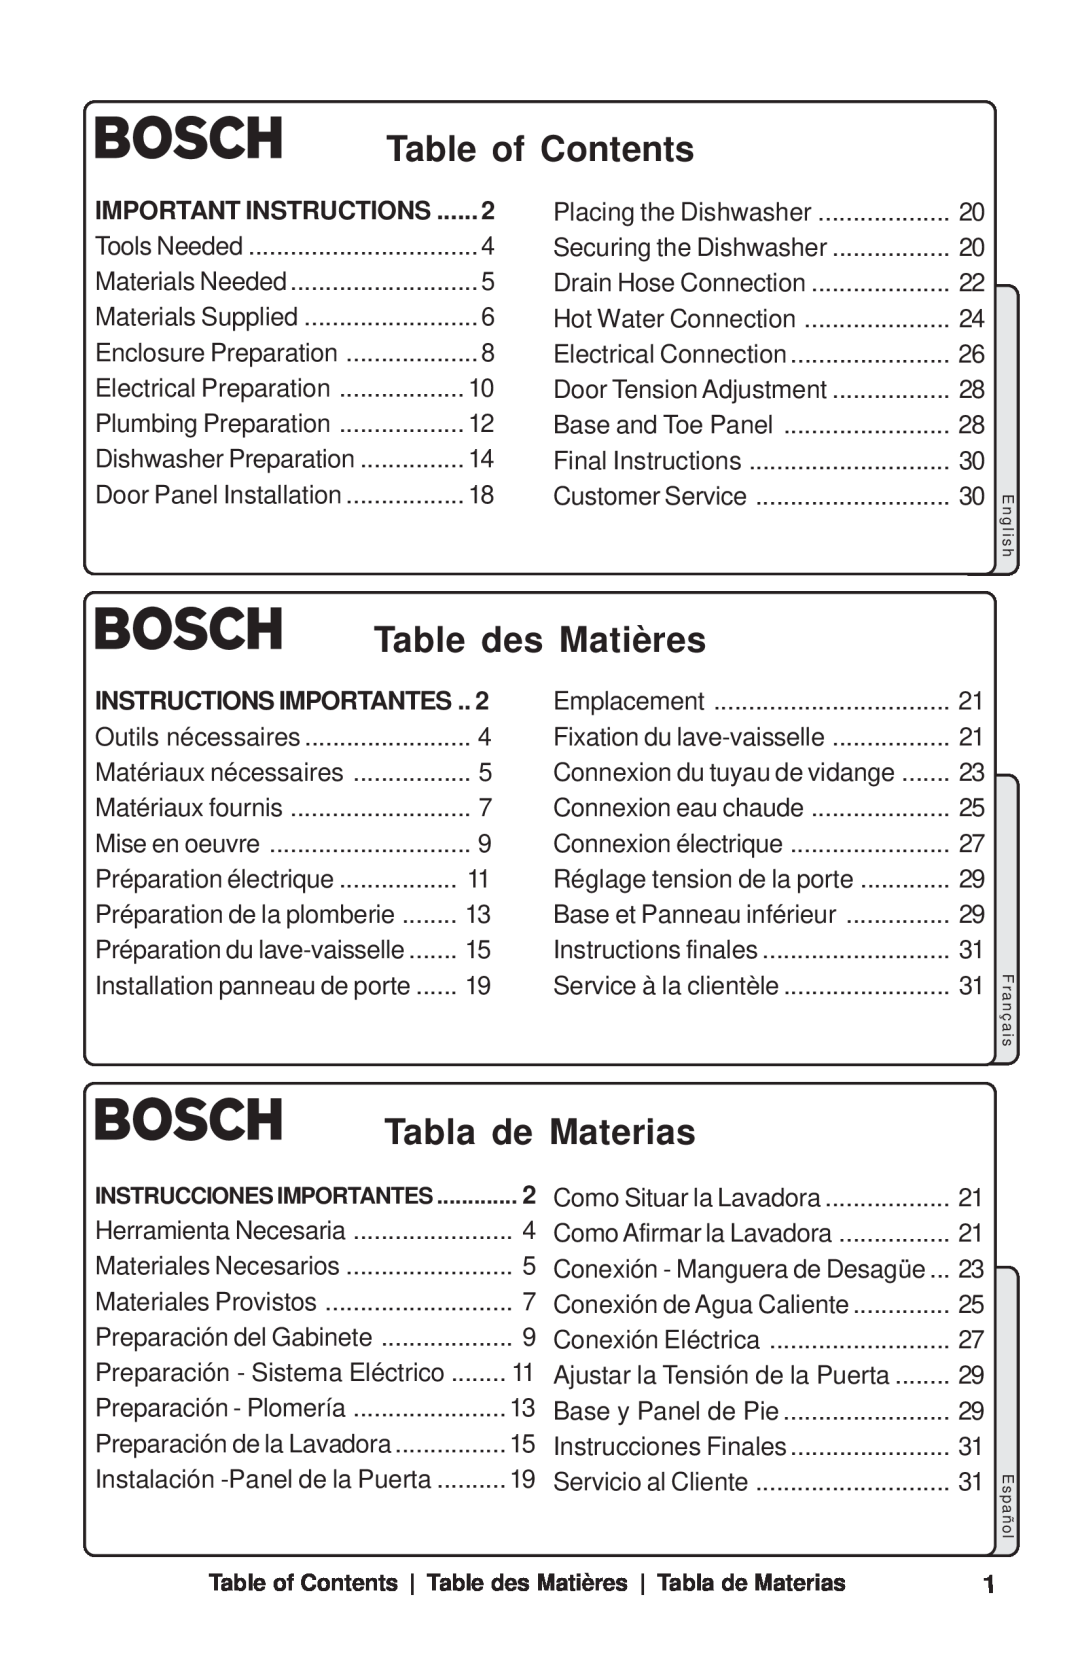 Bosch Appliances SHY99A, SHU53E Important Instructions, Instructions Importantes, Table of Contents, Table des Matières 